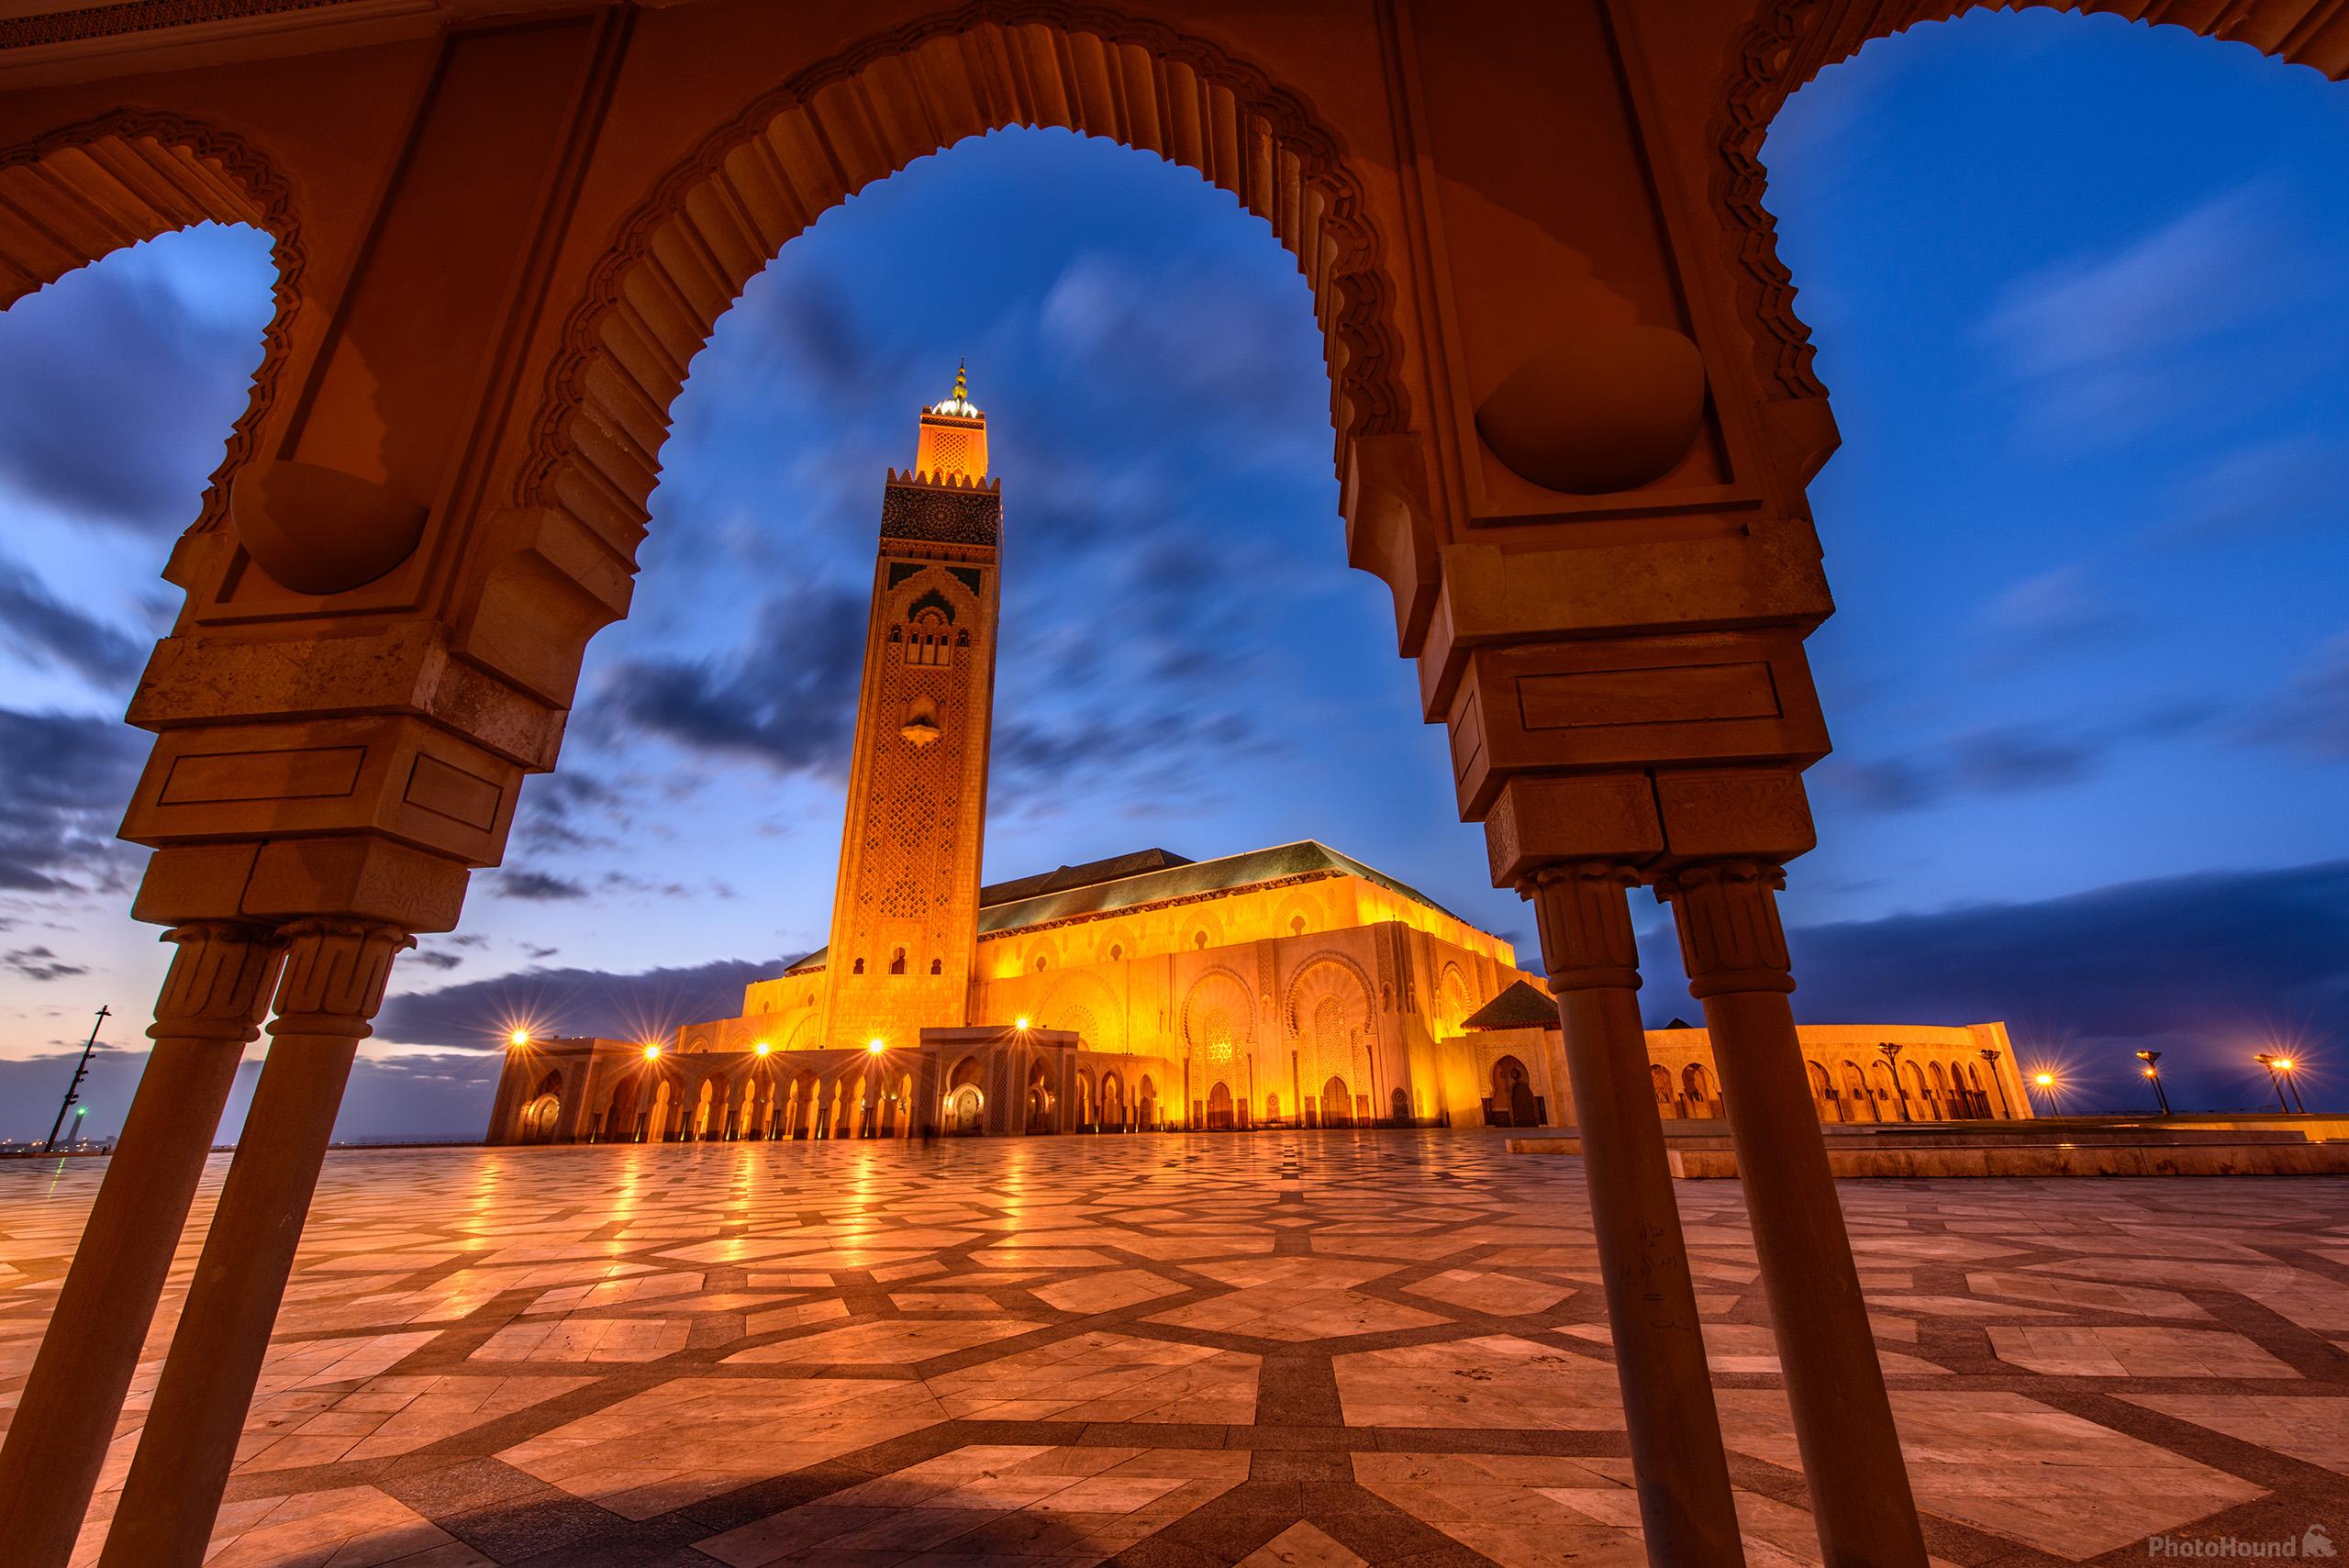 Image of Hassan II Mosque by Luka Esenko